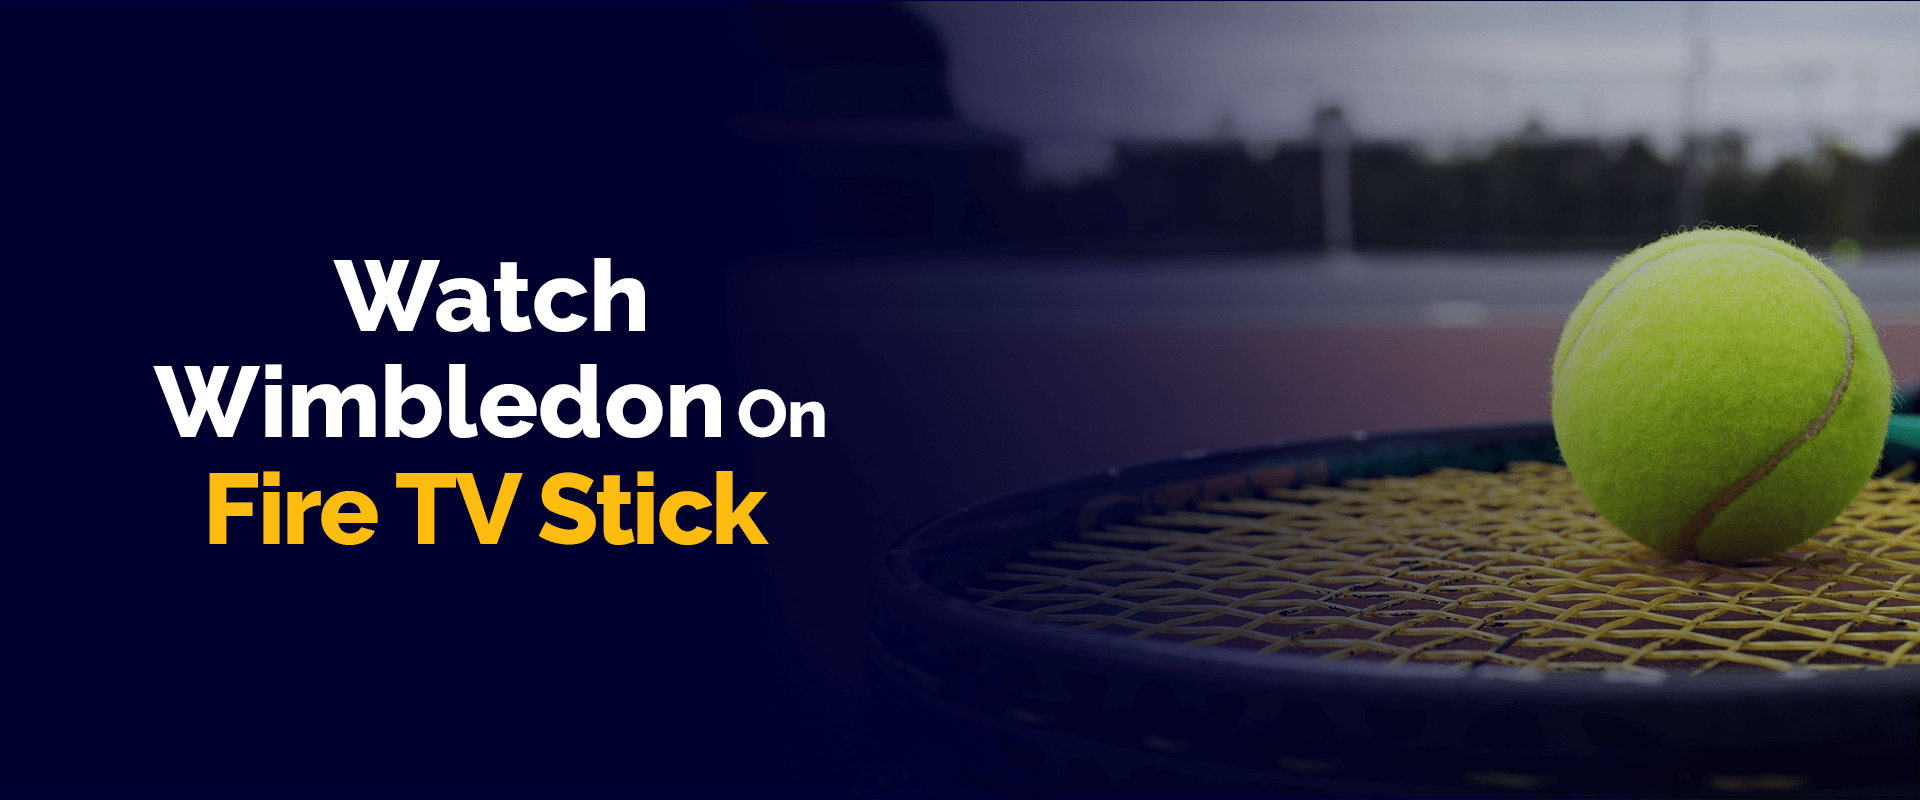 How to Watch Wimbledon on Fire TV Stick